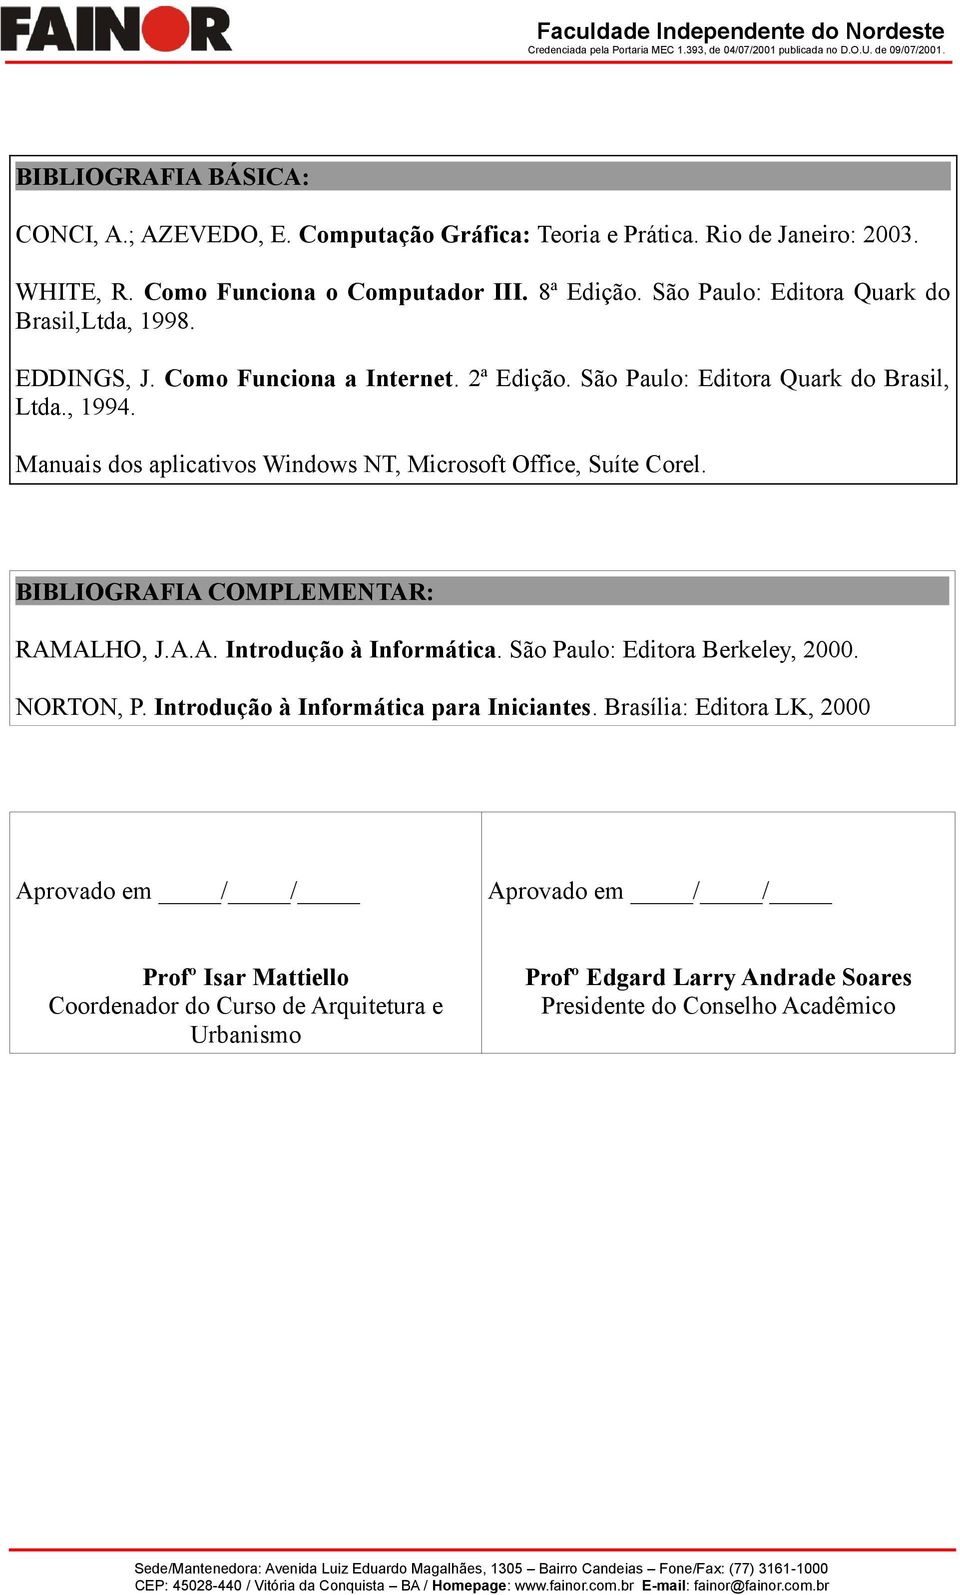 Manuais dos aplicativos Windows NT, Microsoft Office, Suíte Corel. BIBLIOGRAFIA COMPLEMENTAR: RAMALHO, J.A.A. Introdução à Informática. São Paulo: Editora Berkeley, 2000.